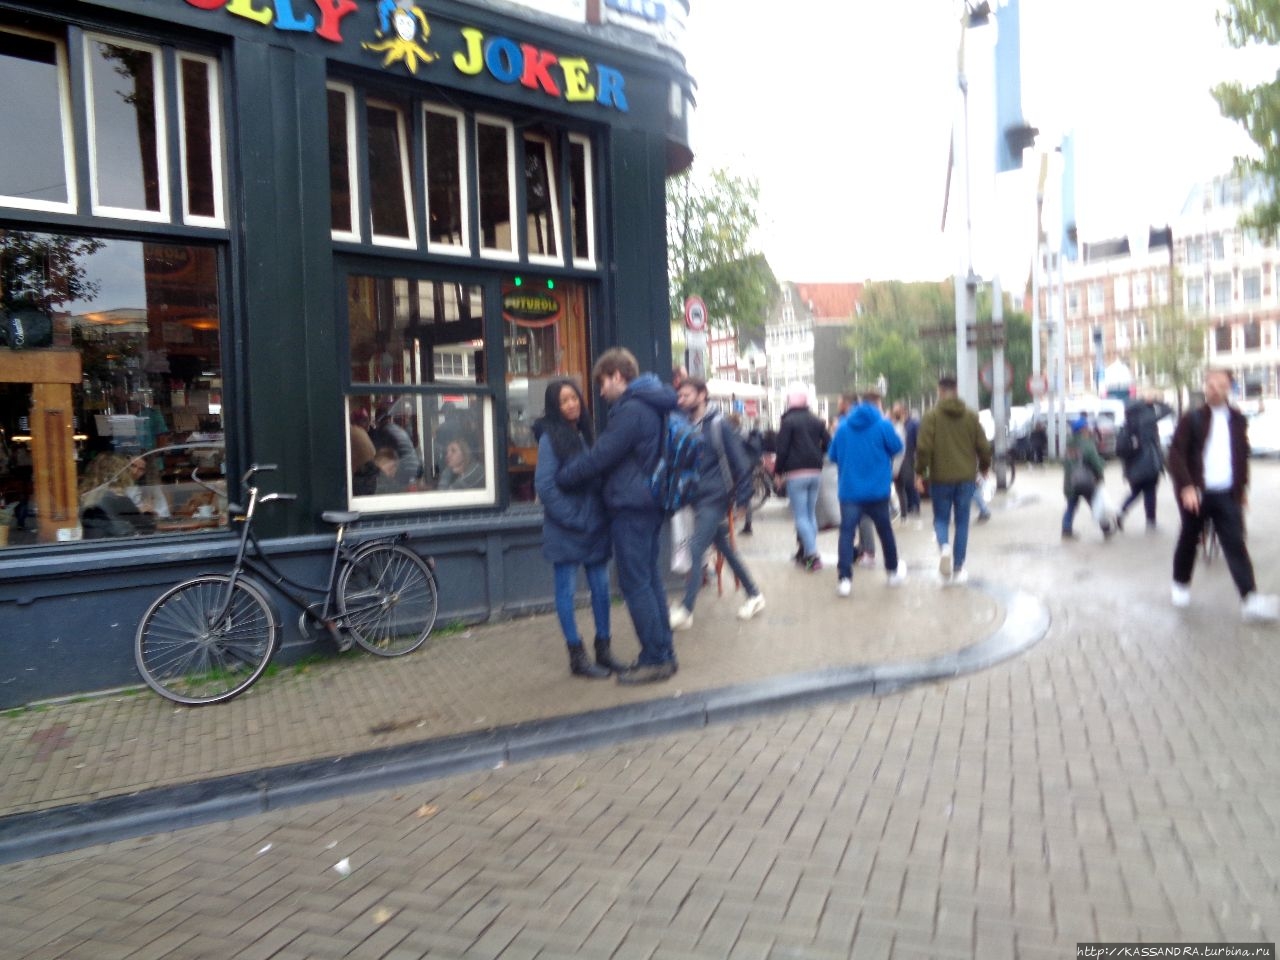 Амстердам. Прогулки под дождем Амстердам, Нидерланды